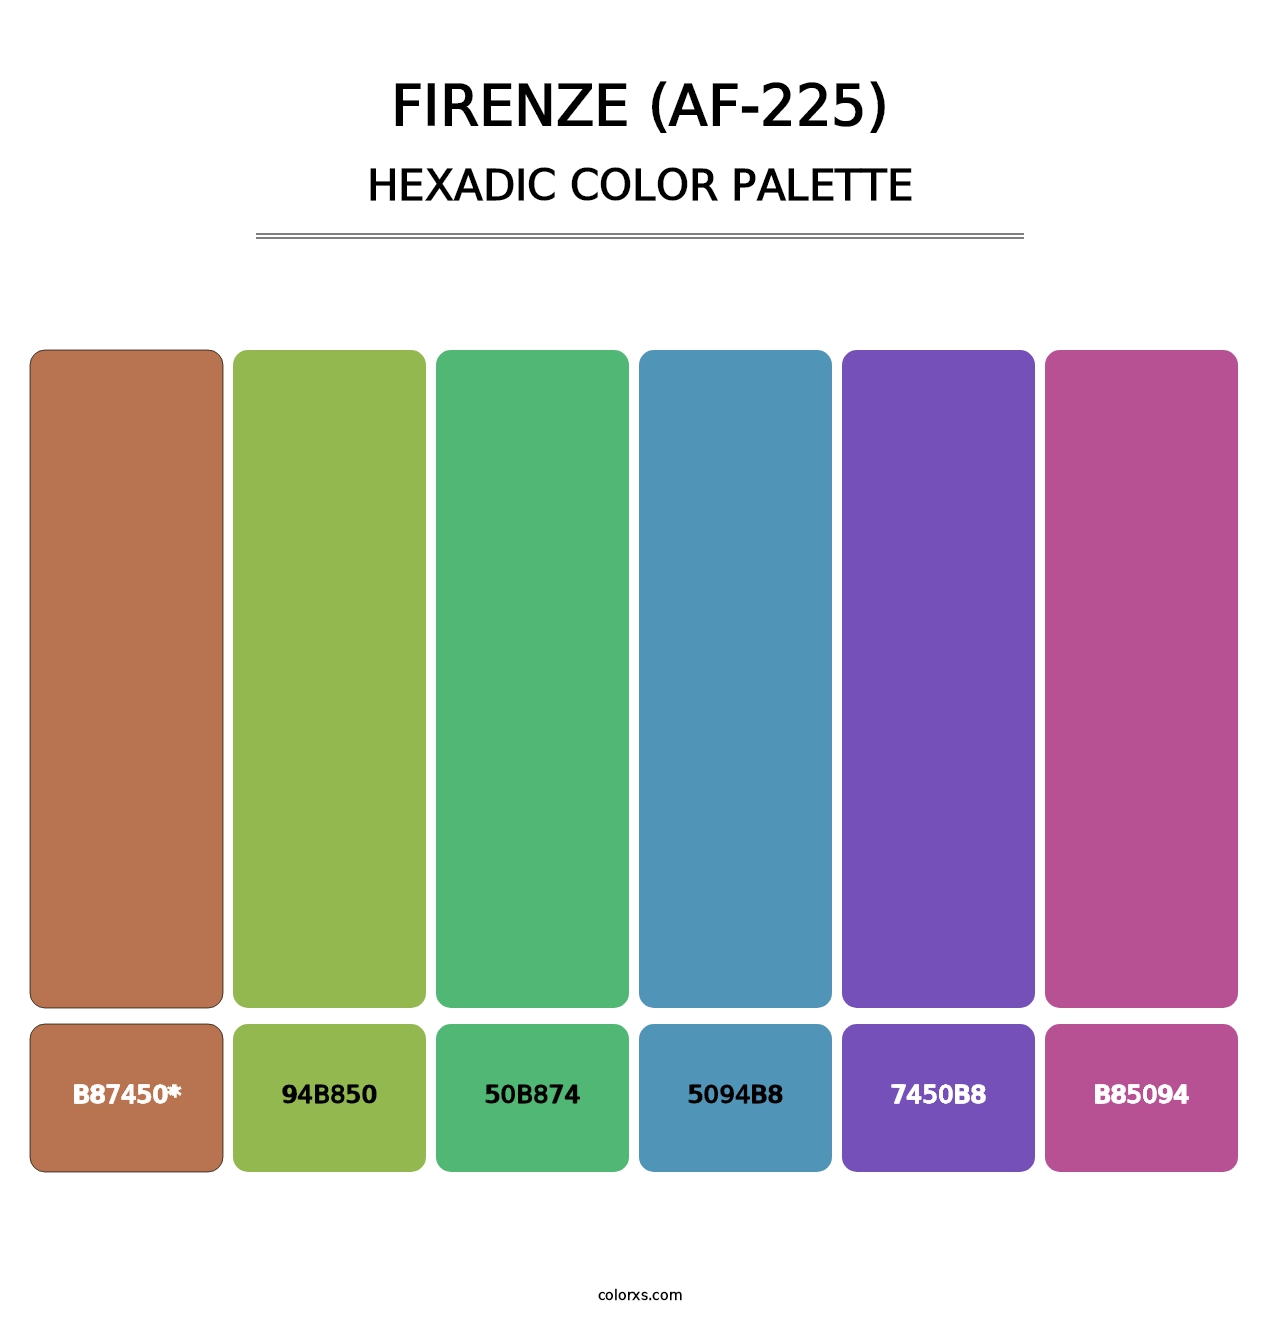 Firenze (AF-225) - Hexadic Color Palette